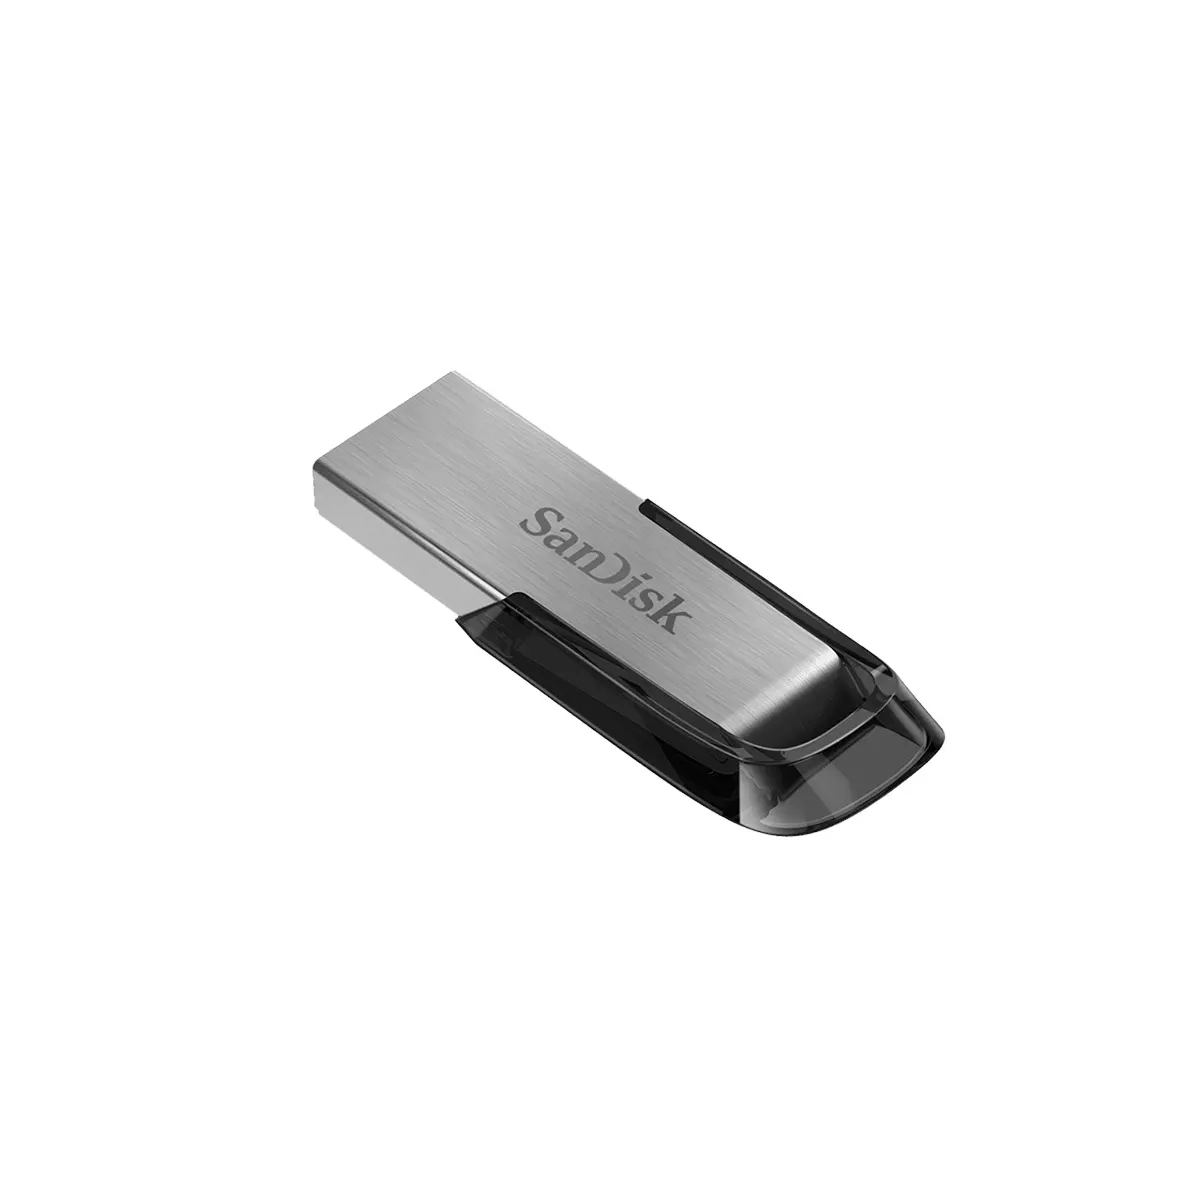 فلش مموری سندیسک SanDisk Ultra Flair CZ73 USB 3.0